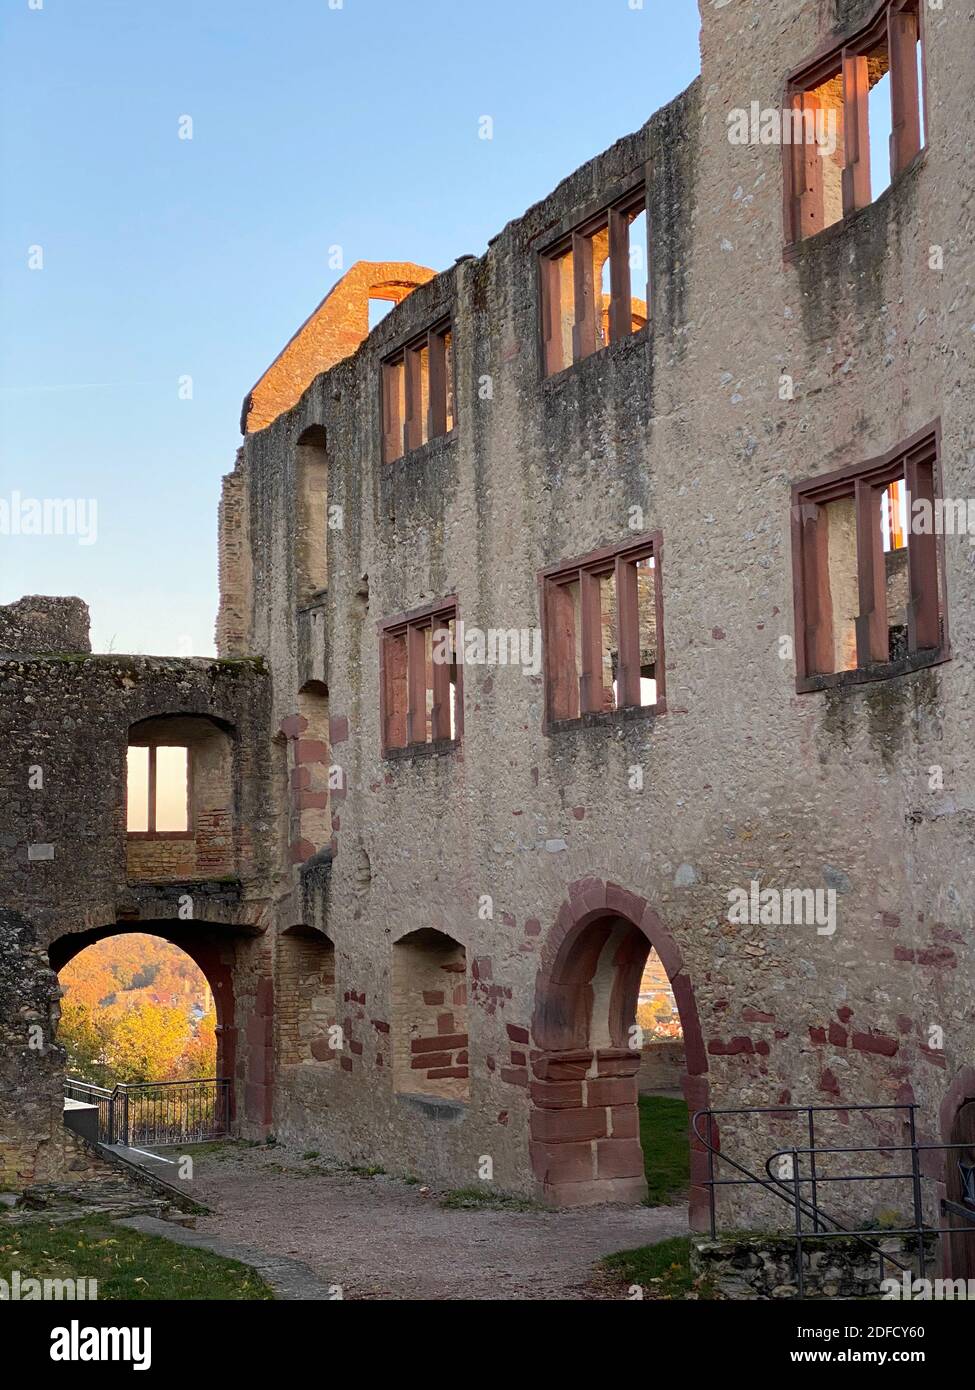 Ruines du château de Landskron à Oppenheim, Rheinhessen, construit au XIIIe siècle, Rhénanie-Palatinat Banque D'Images